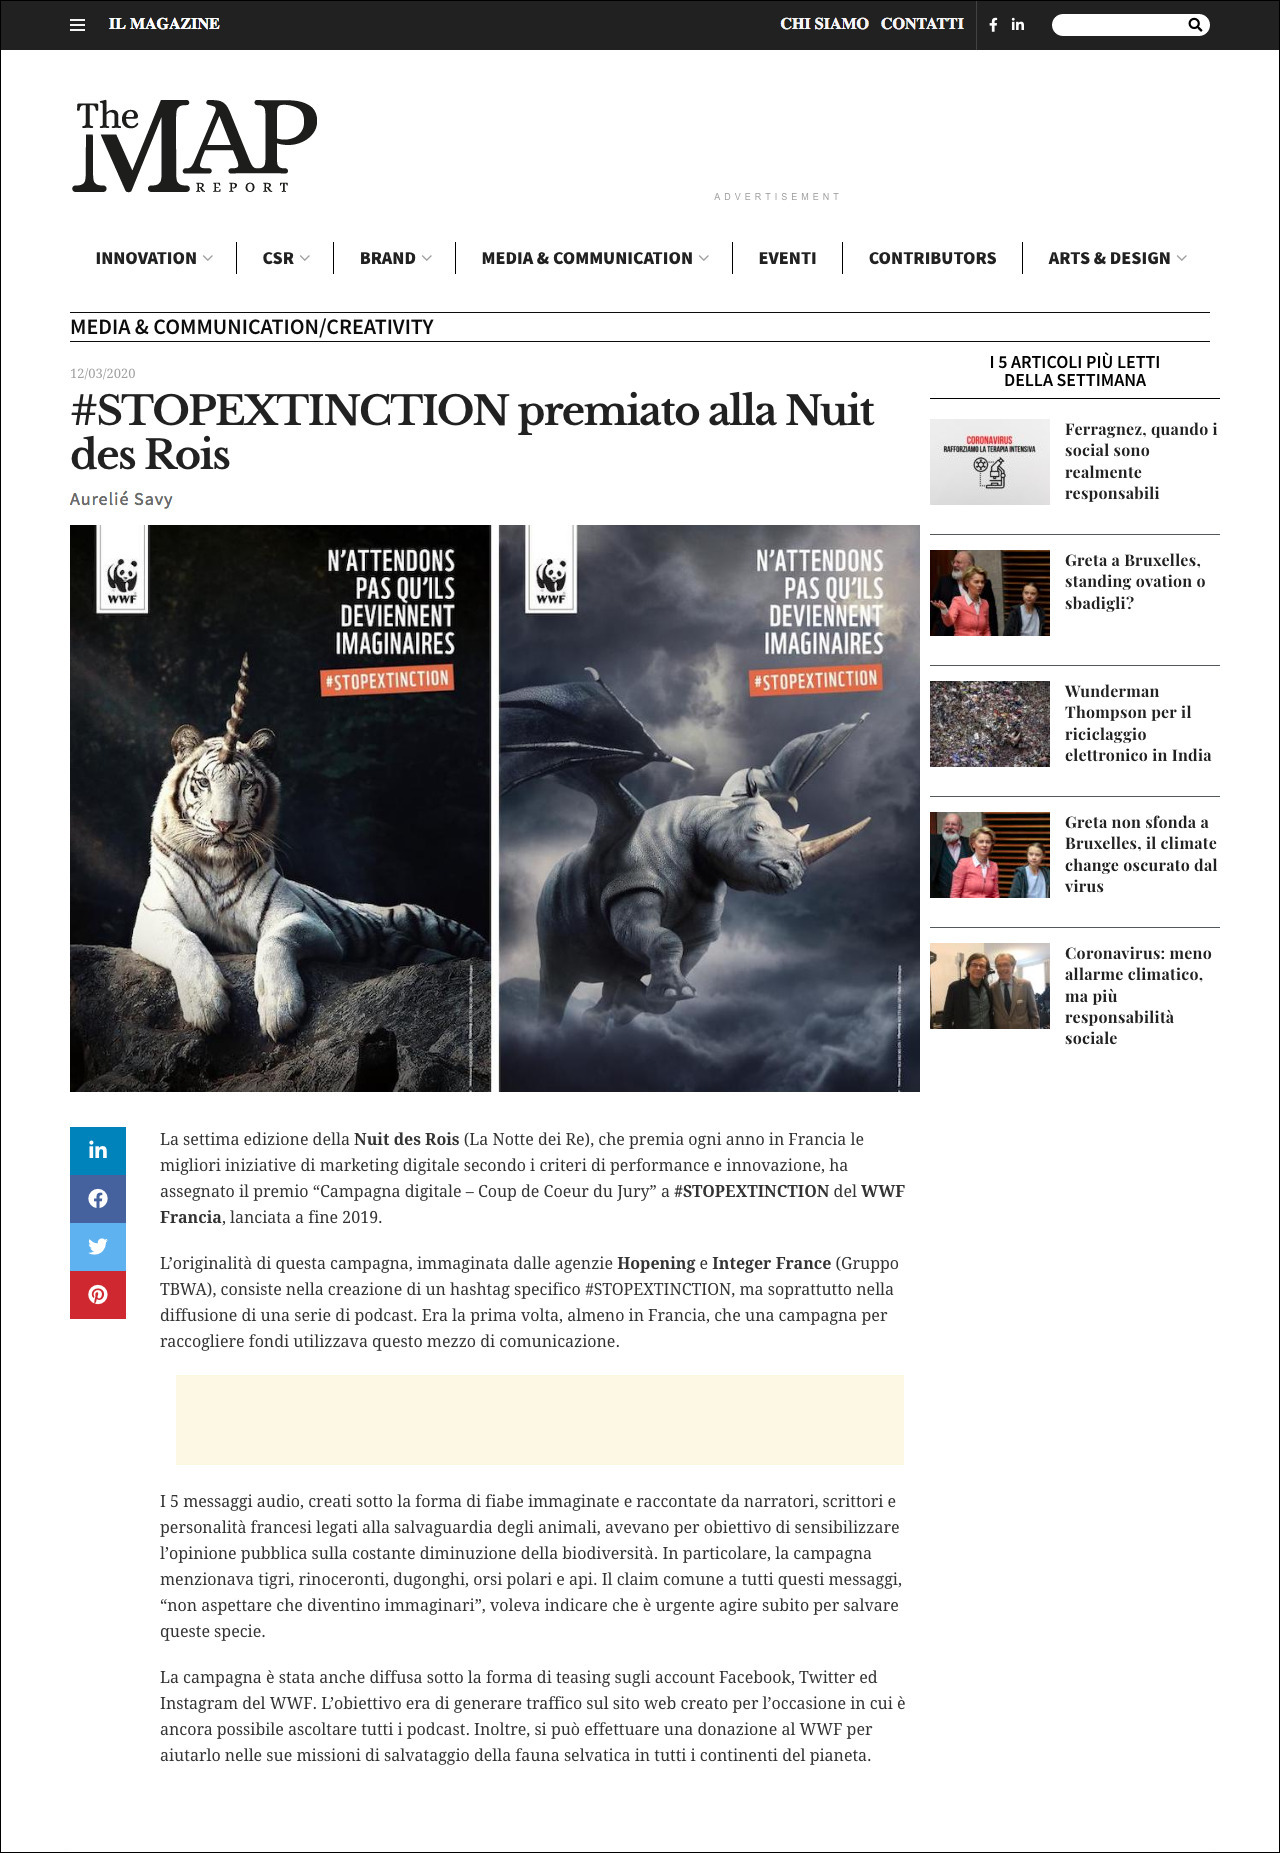 Aurélie Savy per THE MAP REPORT: #STOPEXTINCTION premiato alla Nuit des Rois